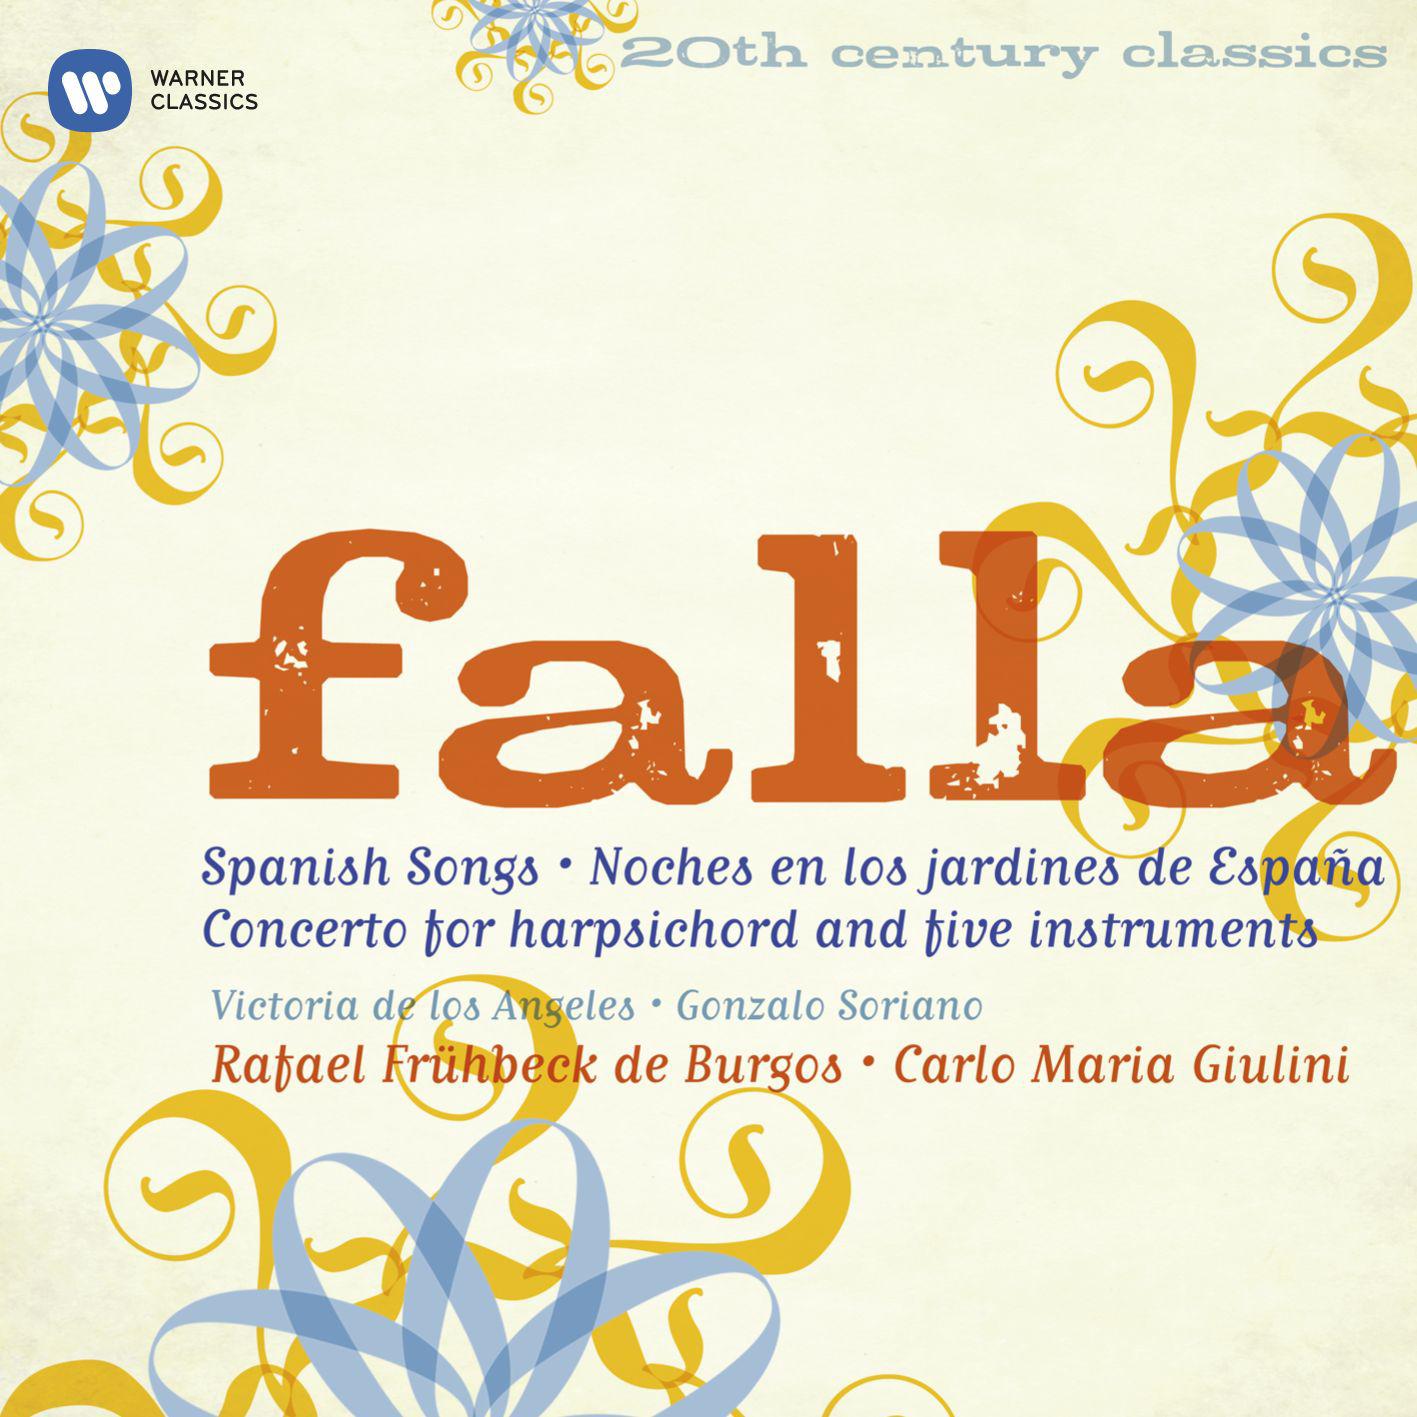 20th Century Classics - Manuel de Falla